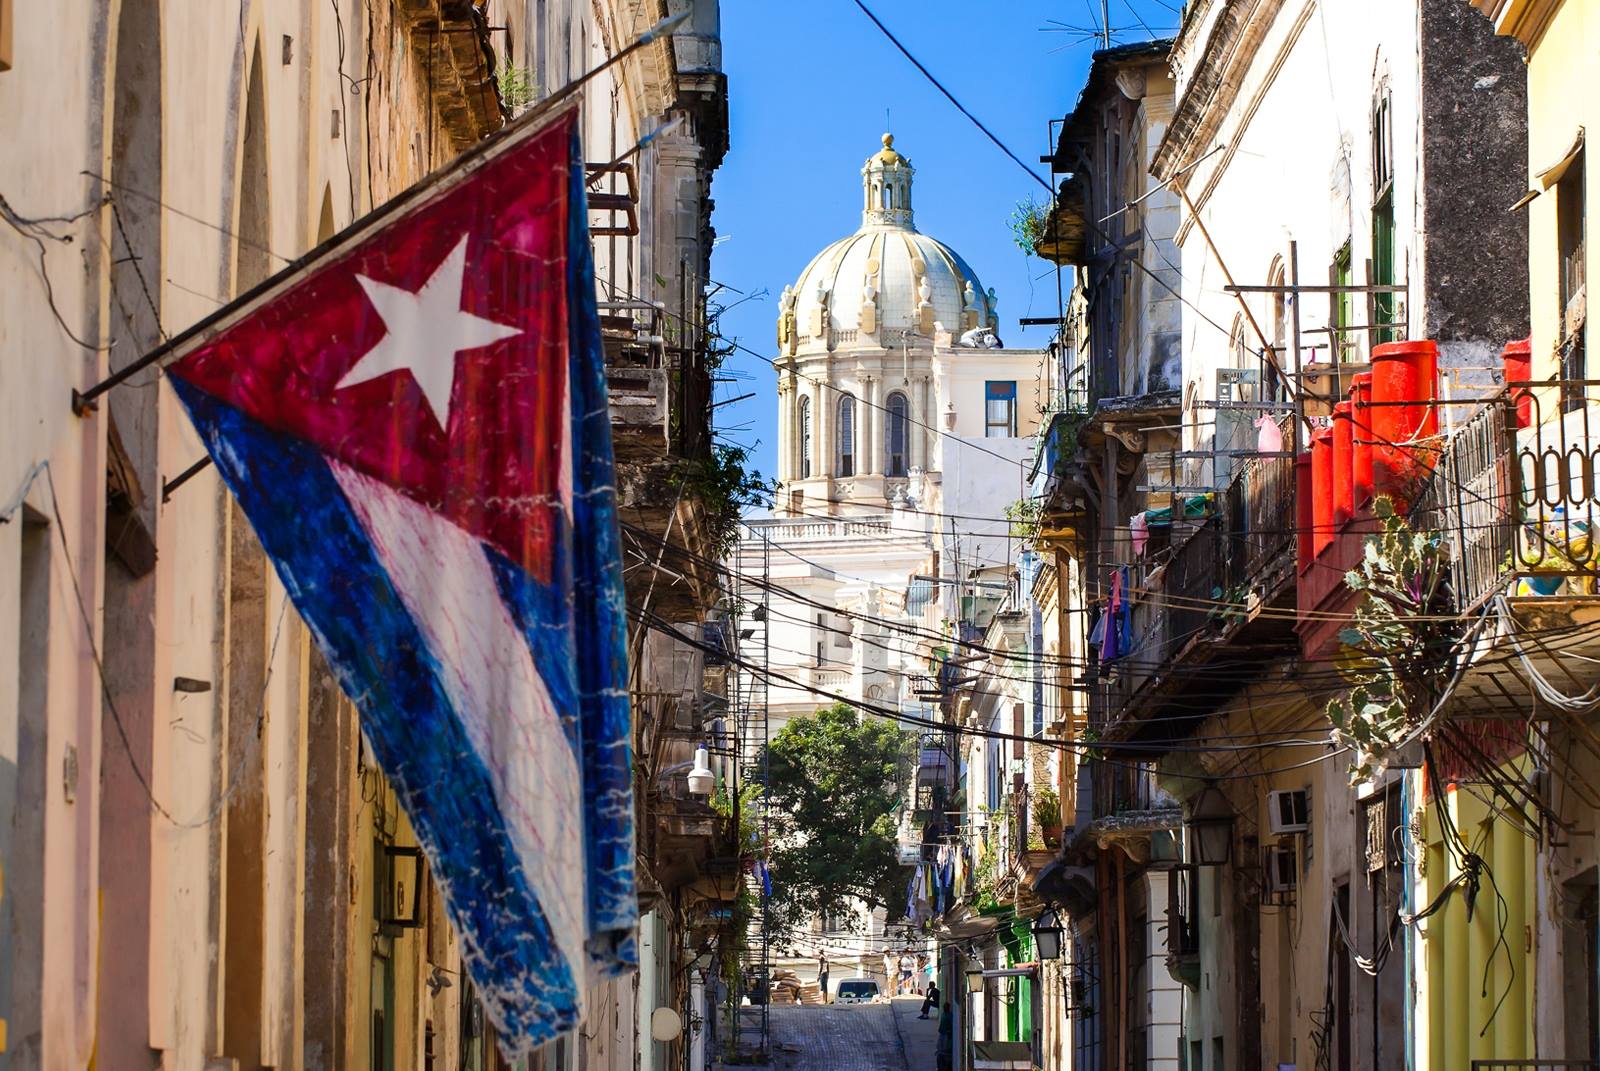 Asignación de citas en el Consulado de México en La Habana